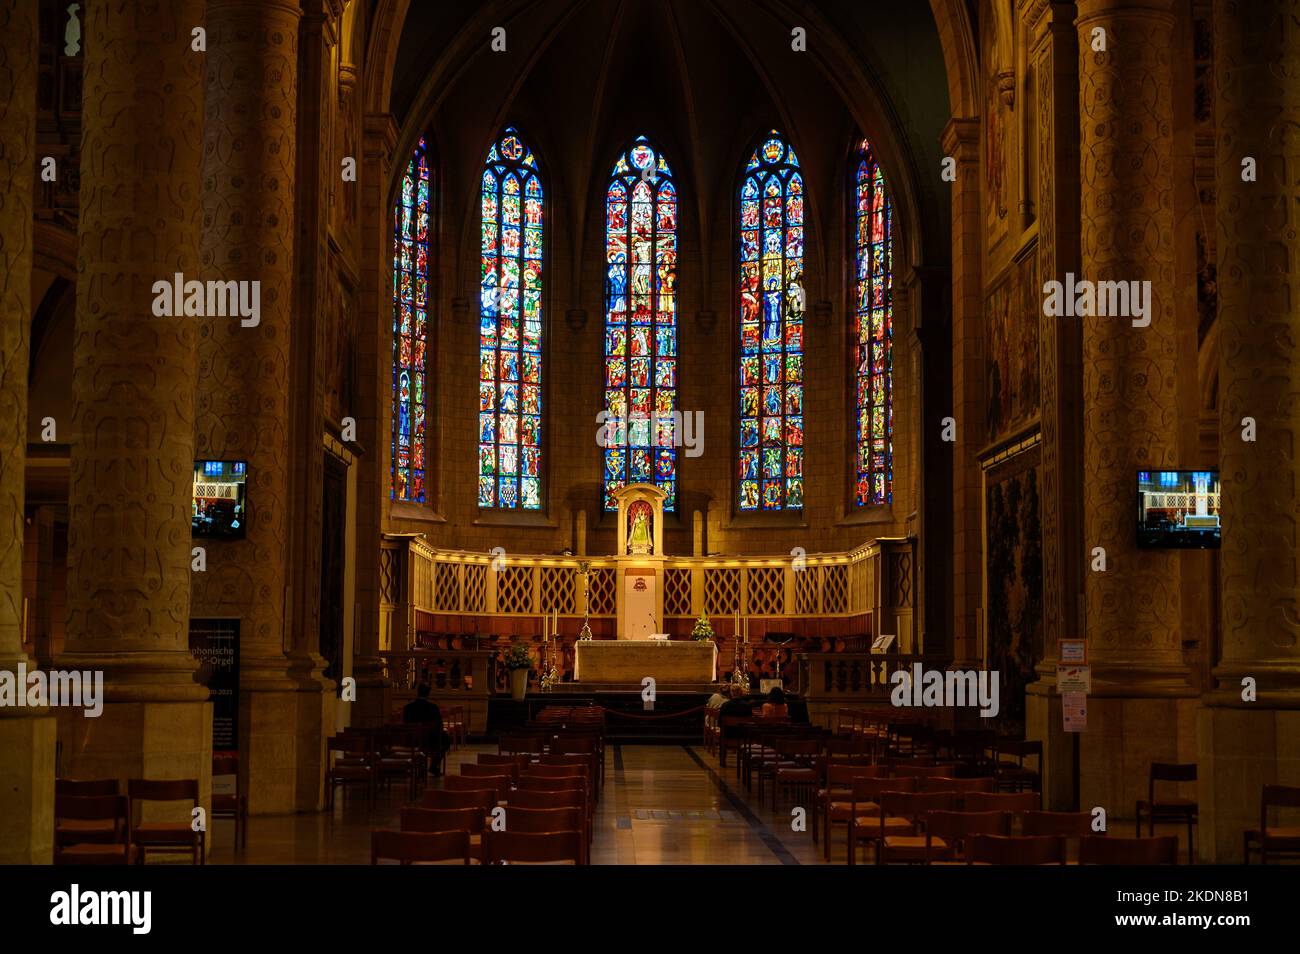 El altar central y las vidrieras encima de él en la catedral de Notre-Dame de Luxemburgo (la catedral de Notre-Dame de Luxemburgo). Foto de stock